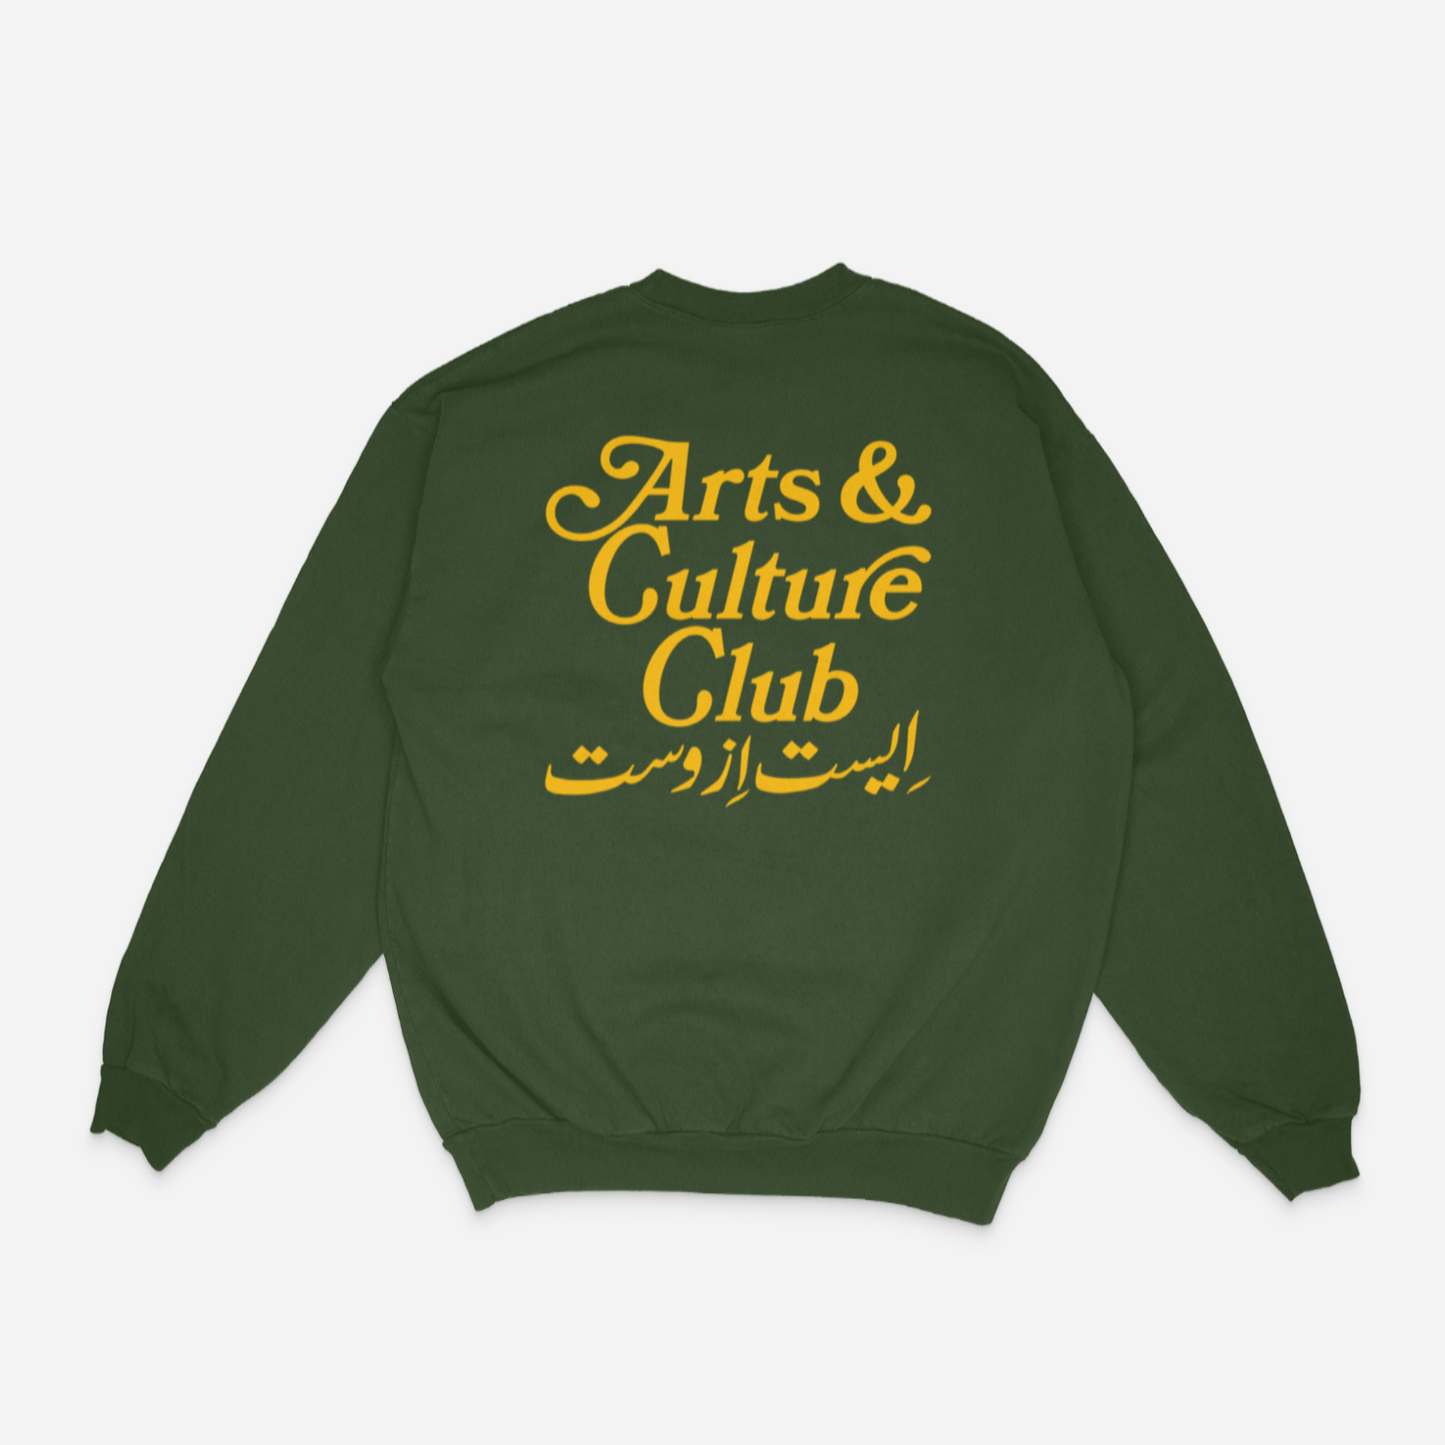 Arts & Culture Club Crewneck (Ivy)